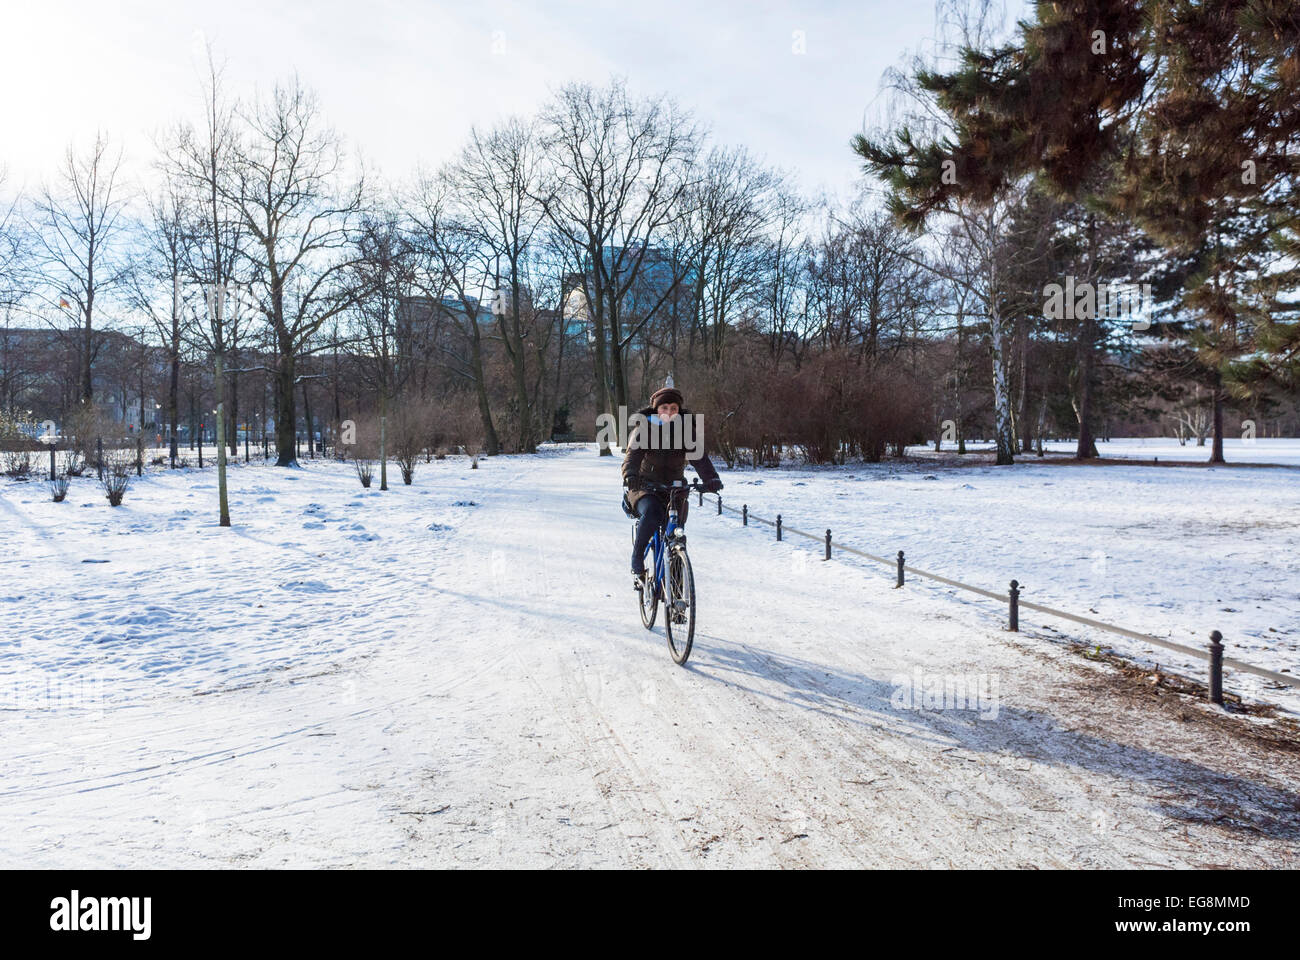 Woman in Garden, Berlin, Allemagne, Cyclisme dans les scènes de parc public allemand, Tiergarten in Winter Snow, écologie de mobilité de l'espace public Banque D'Images